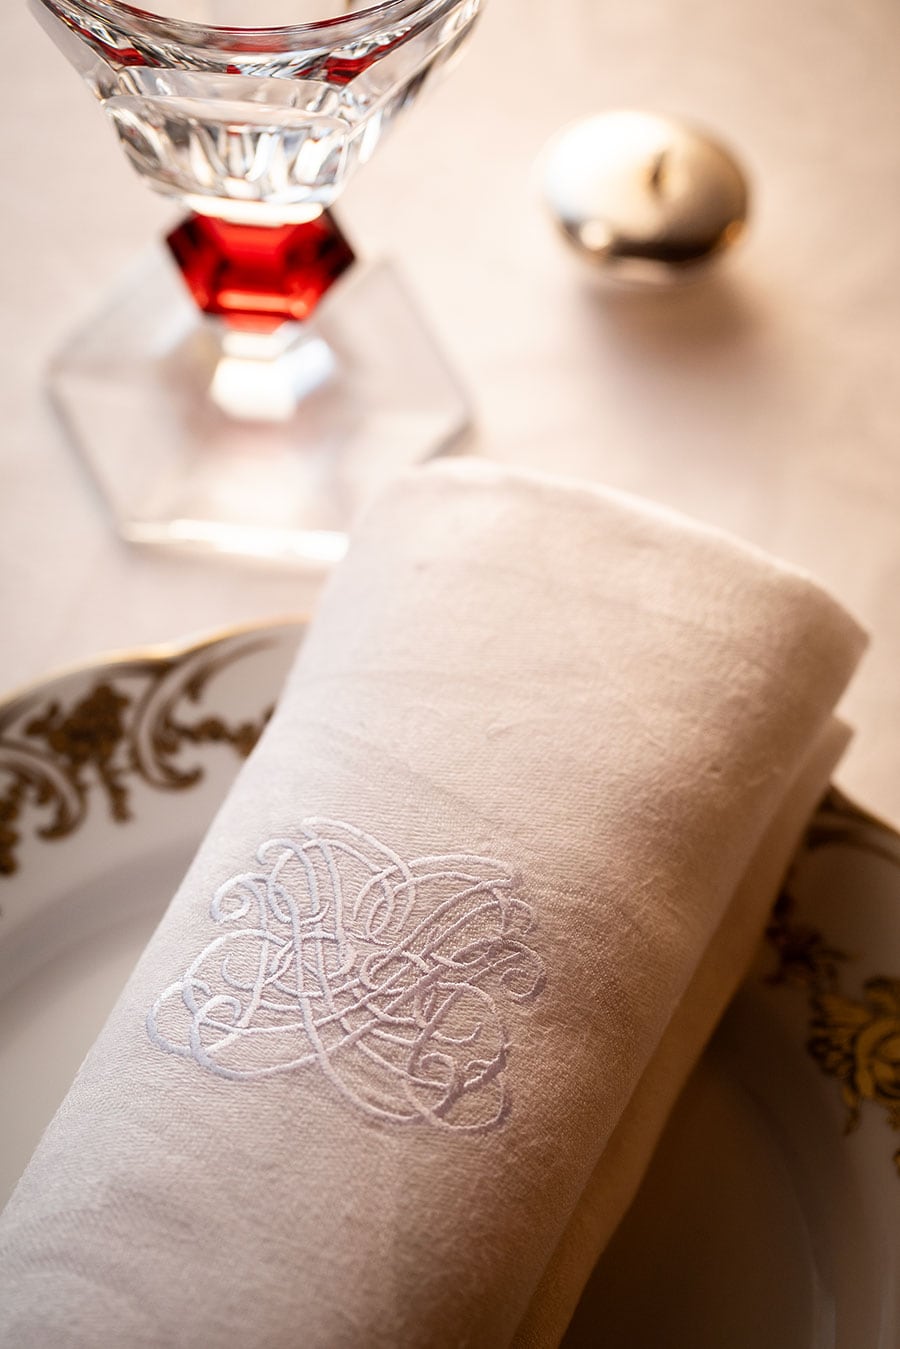 エレガントな紋章が入ったテーブルクロス。ヴェルサイユ宮殿の晩餐会をイメージし、グラス、カトラリーすべてが選び抜かれている。食事はゲスト全員が同時刻にスタートするスタイル。